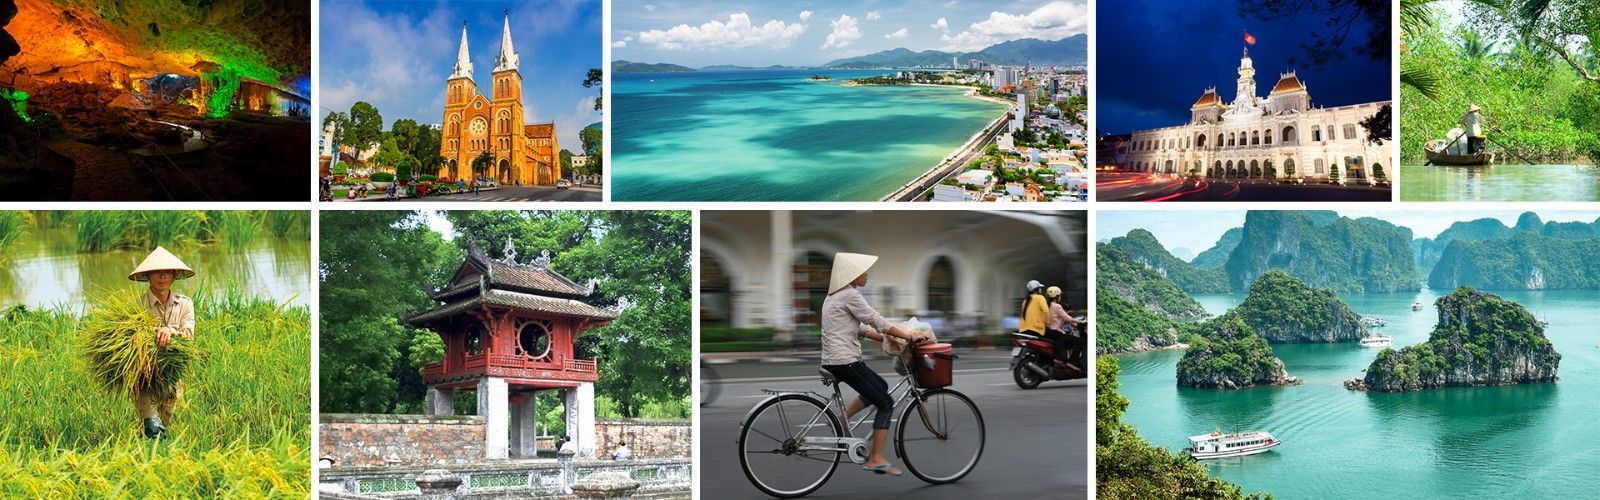 Гиды в вьетнаме, экскурсии, отзывы (подробнее на сайте!) 2021